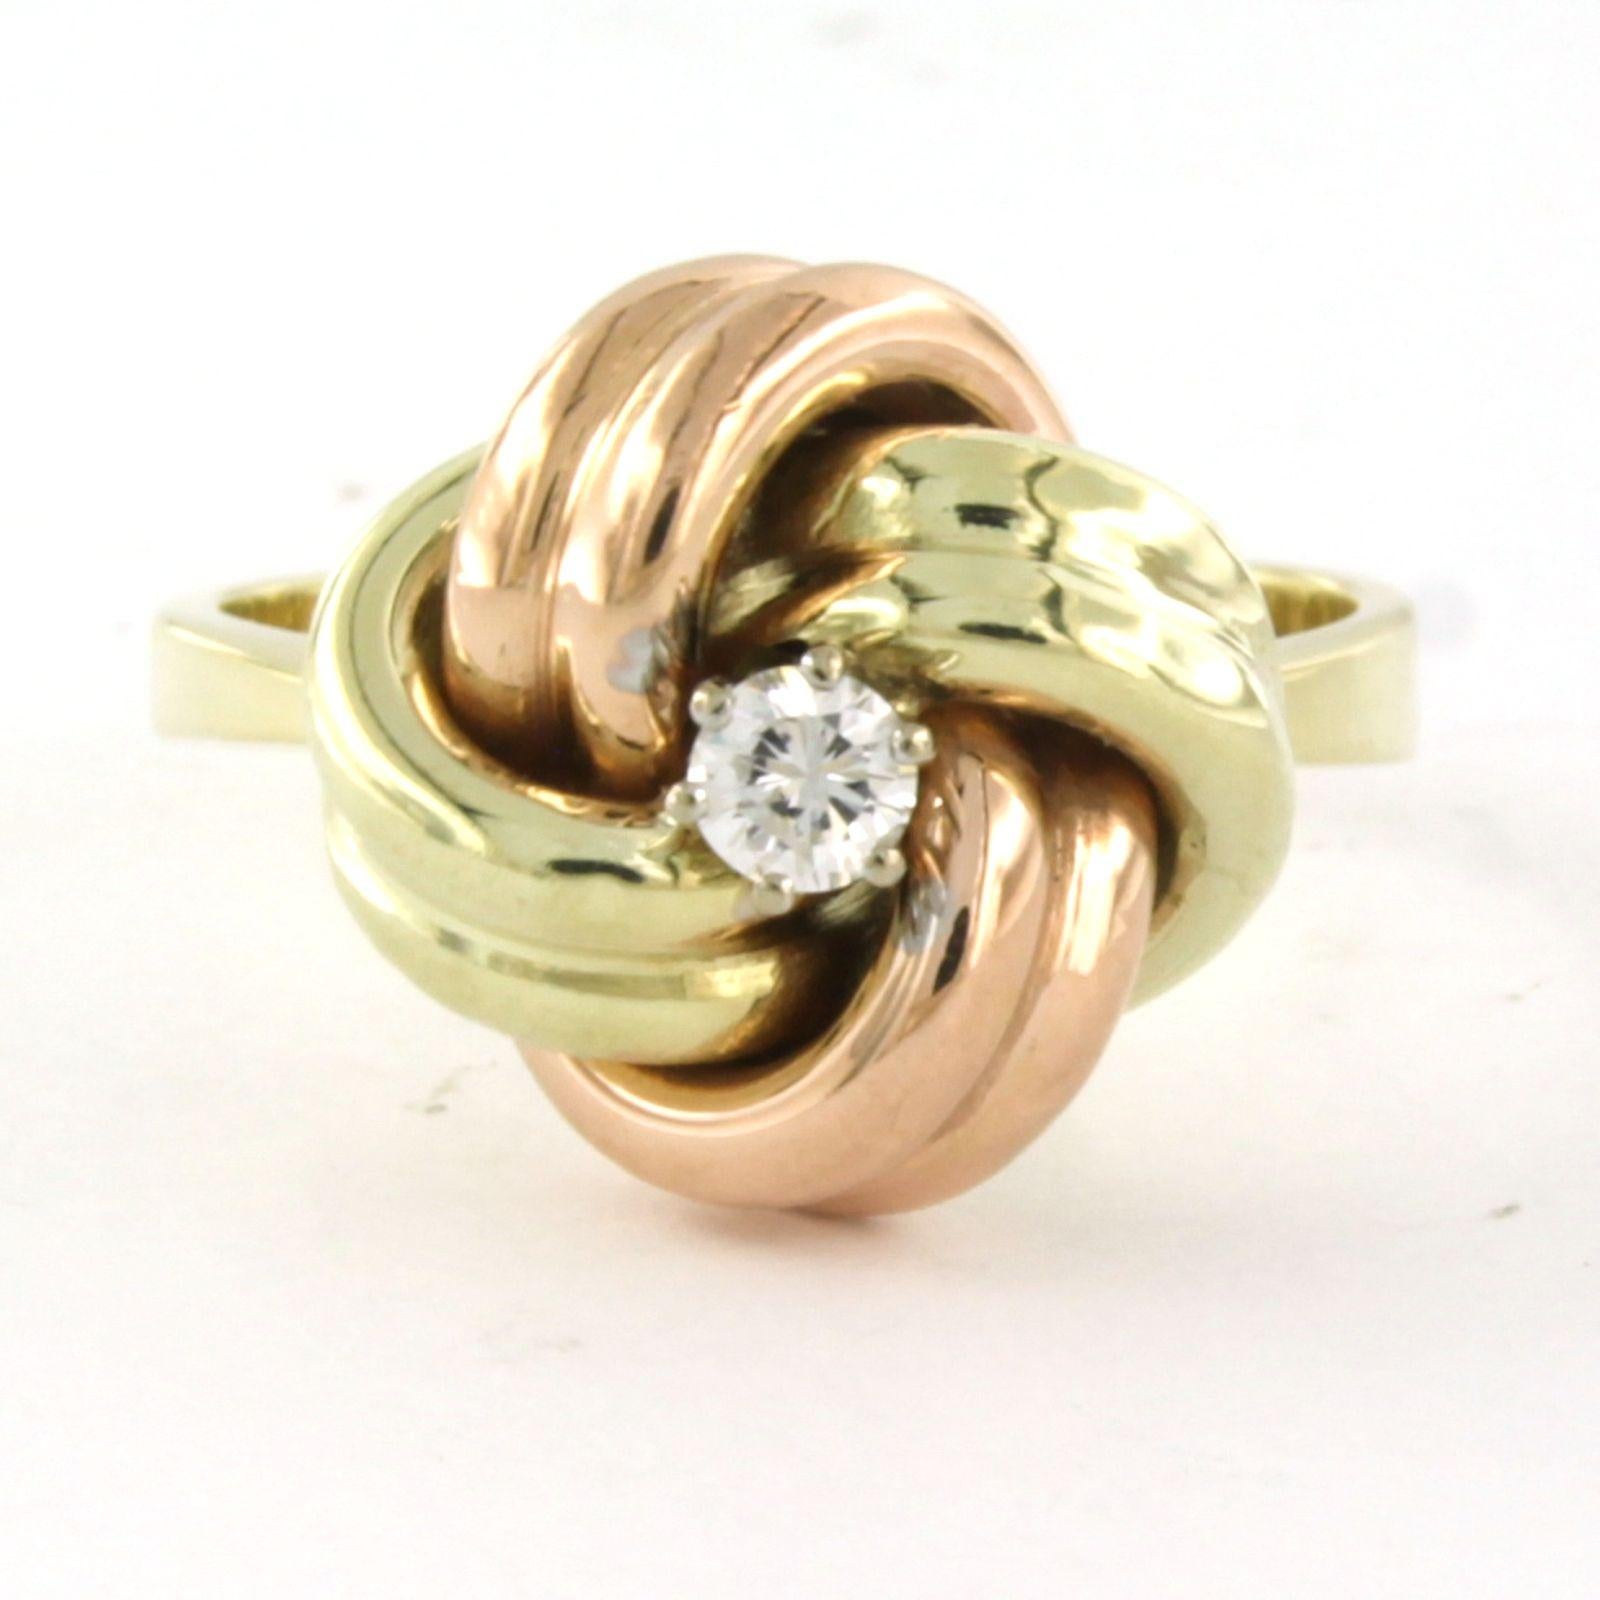 Ring aus 14 Karat dreifarbigem Gold, besetzt mit Diamanten im Brillantschliff. 0,13ct - F/G - VS/SI - Ringgröße U.S. 8 - EU. 18.25(57)

Ausführliche Beschreibung

die Oberseite des Rings ist 1,5 cm breit und 9,8 mm hoch

Ringgröße US 8 - EU.